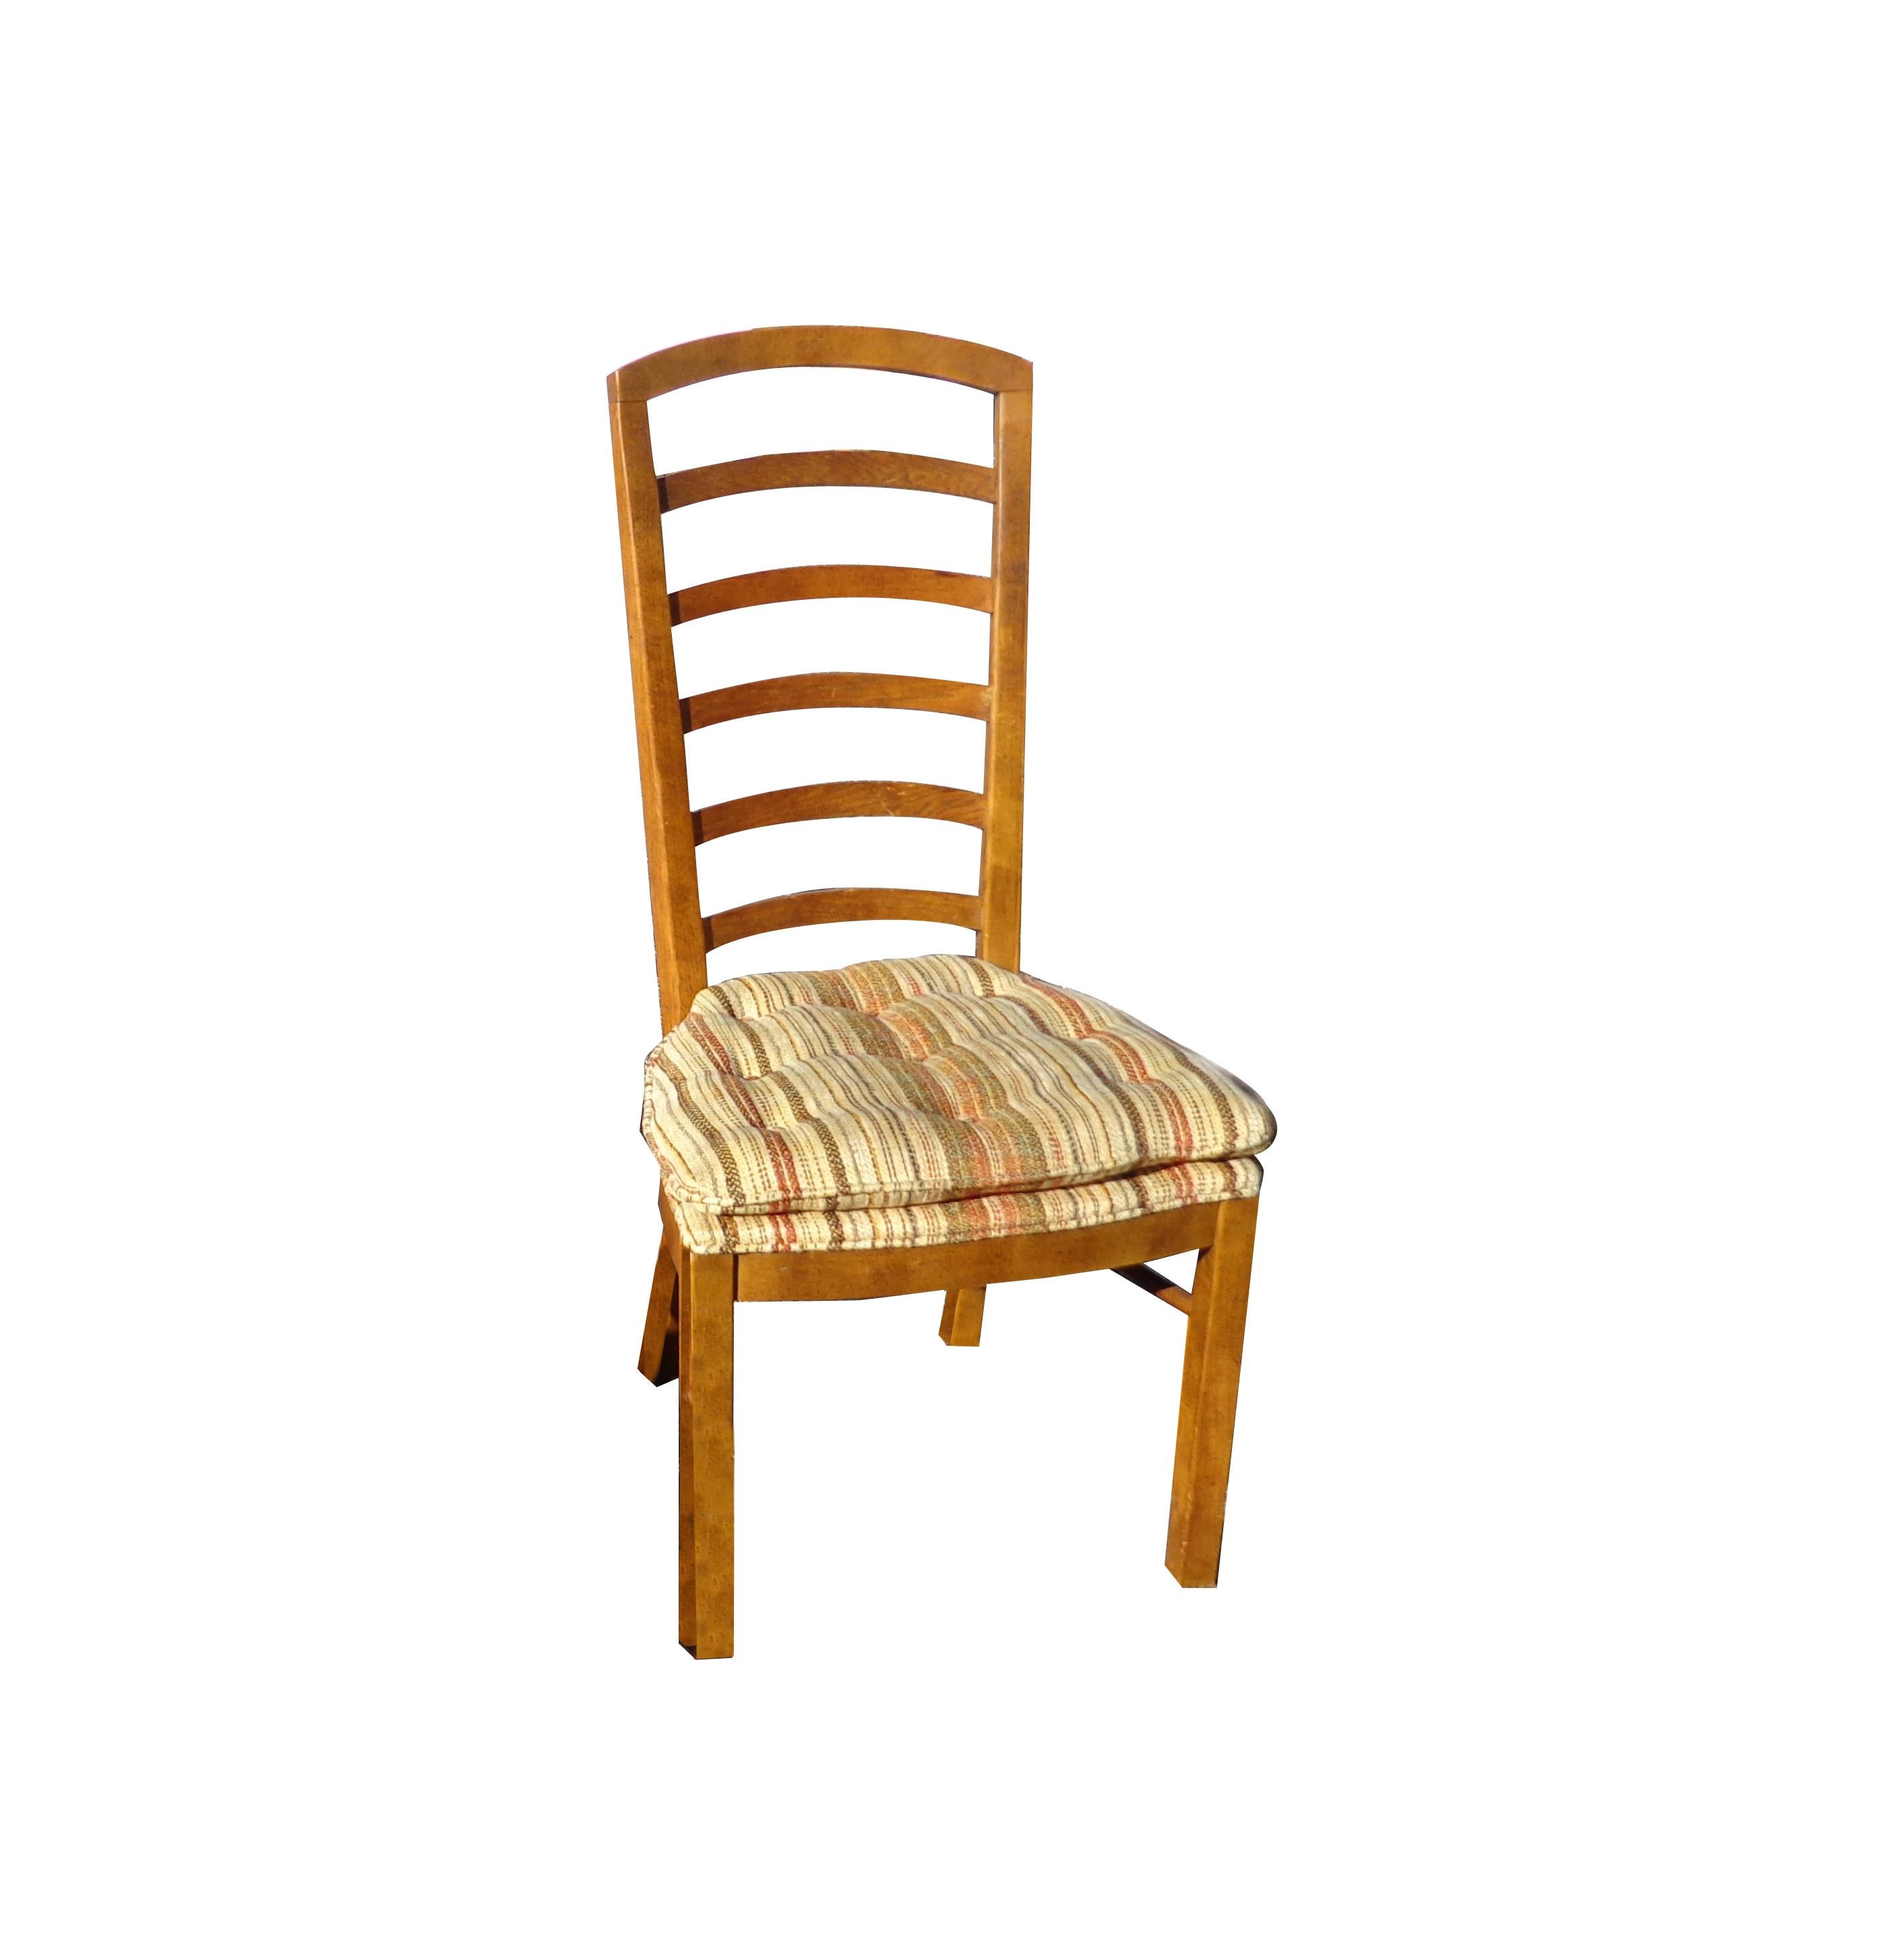 Woodbriar serie von Drexel 6 stühle





2 Sessel
4 Beistellstühle
Tabelle

62? Breite x 38,25? Tiefe x 29? Höhe
2 Blätter
Jeder 20? Breite x 38,25? Tiefe

2 Sessel
22? Breite x 21? Tiefe x 42? Höhe
Sitzhöhe 20?
Armhöhe 24,5?

4 Beistellstühle
20?